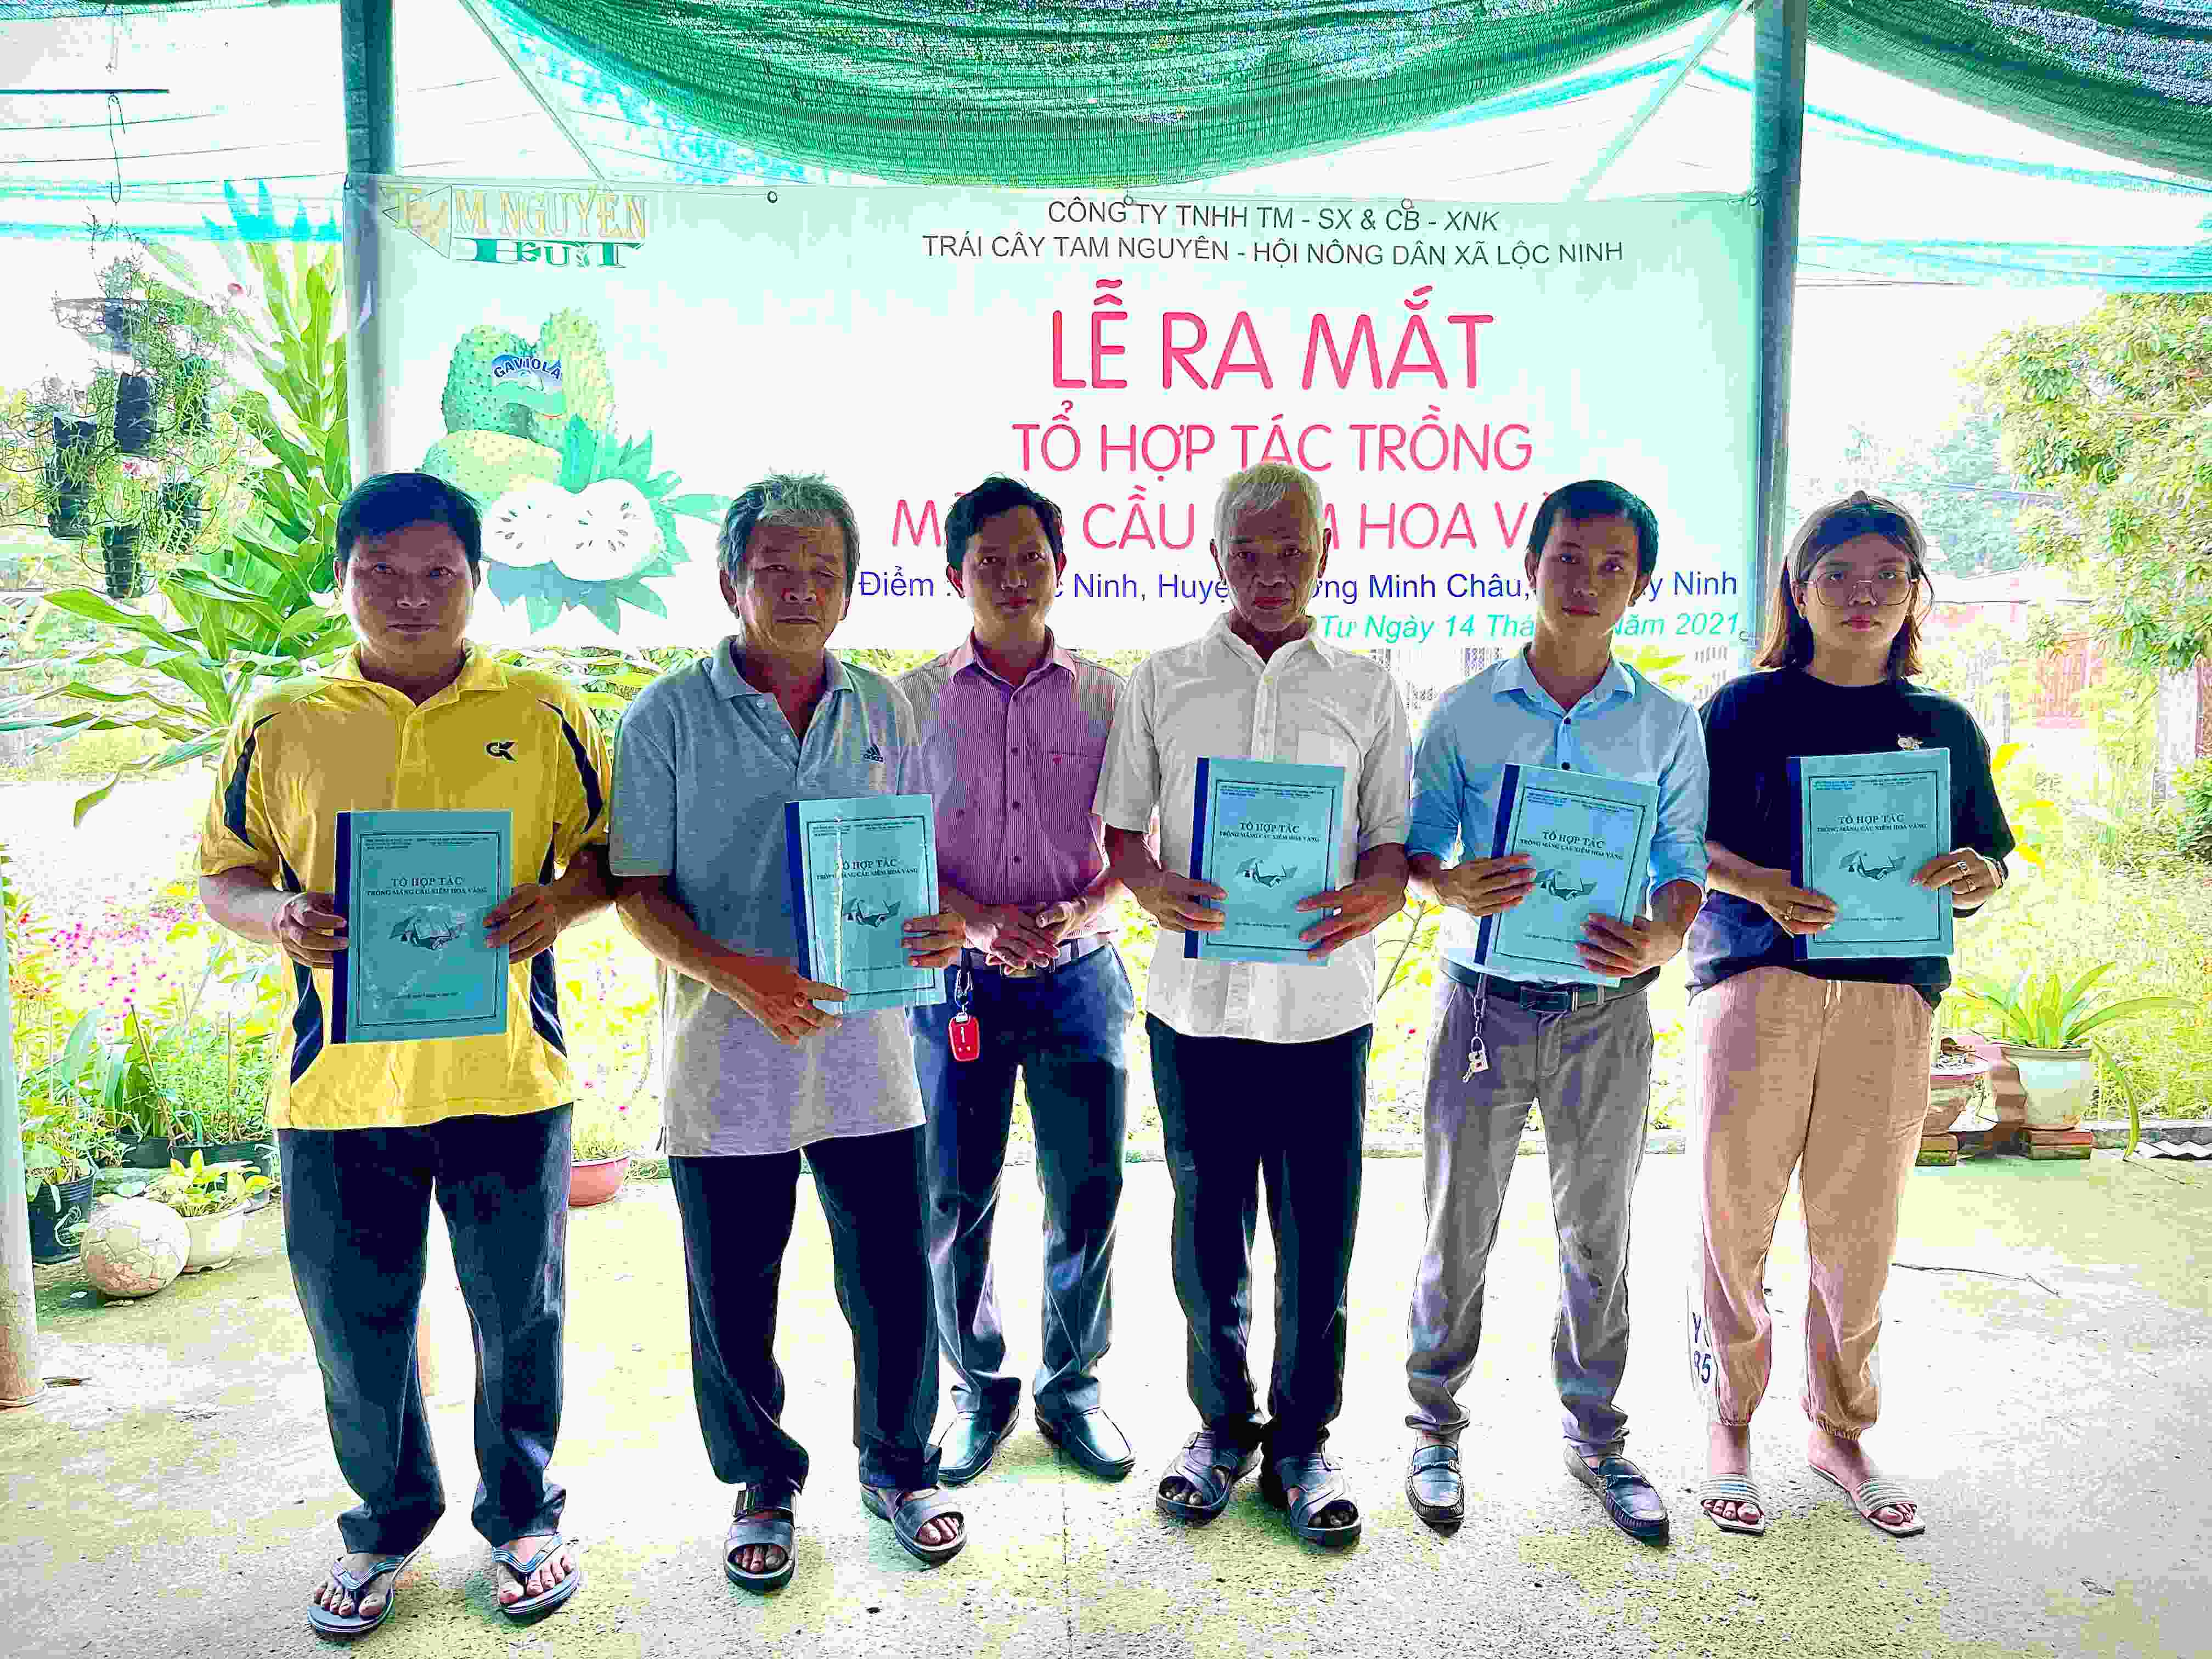 Hội Nông dân xã Lộc Ninh, huyện Dương Minh Châu Ra mắt Tổ hợp tác trồng mãng cầu xiêm hoa vàng